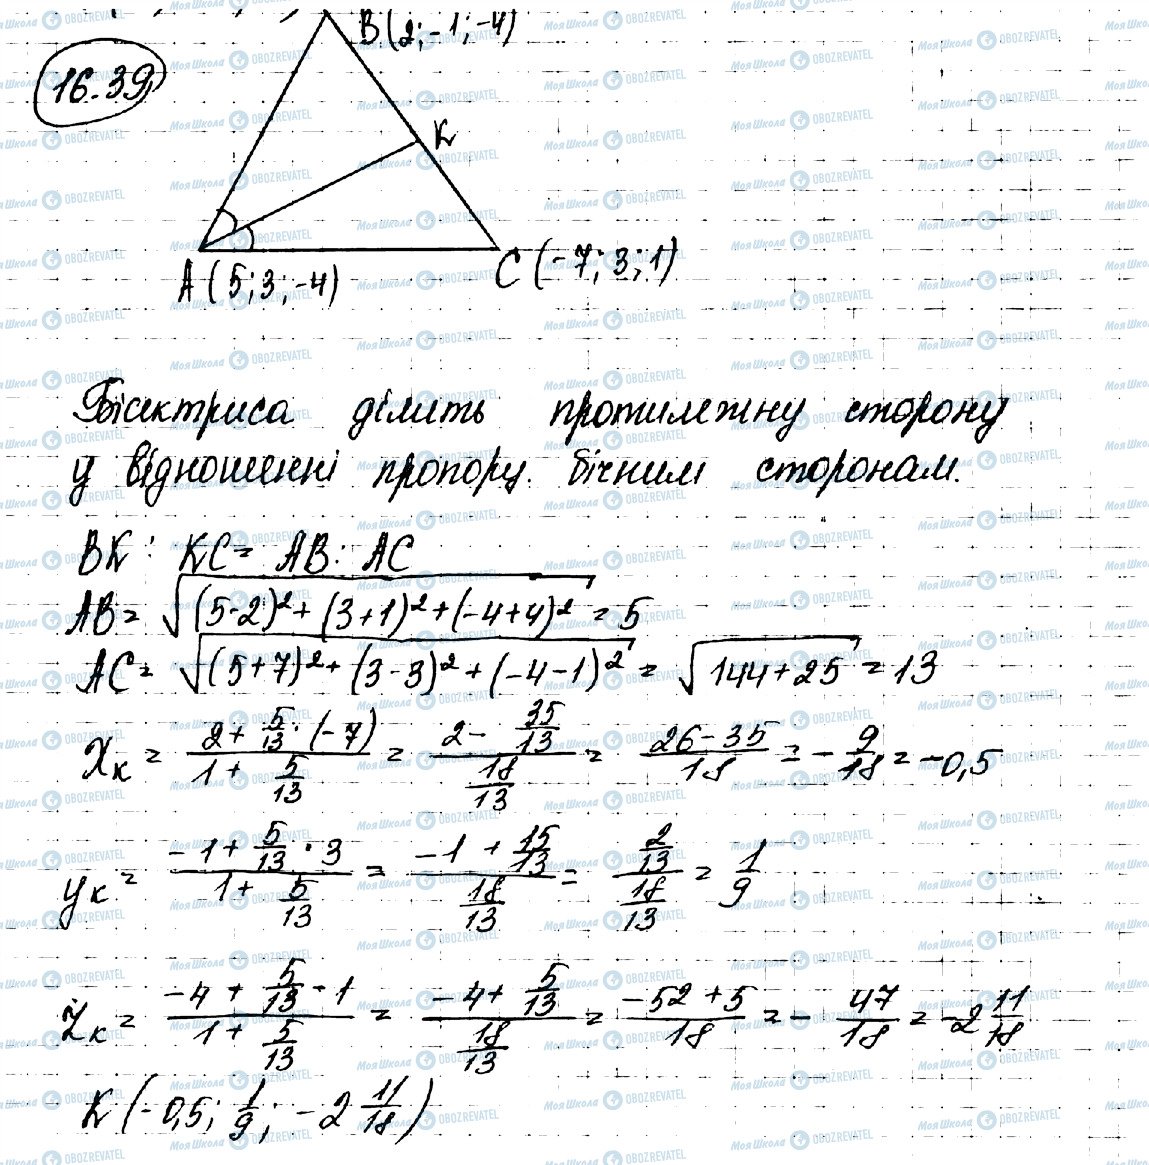 ГДЗ Геометрия 10 класс страница 39